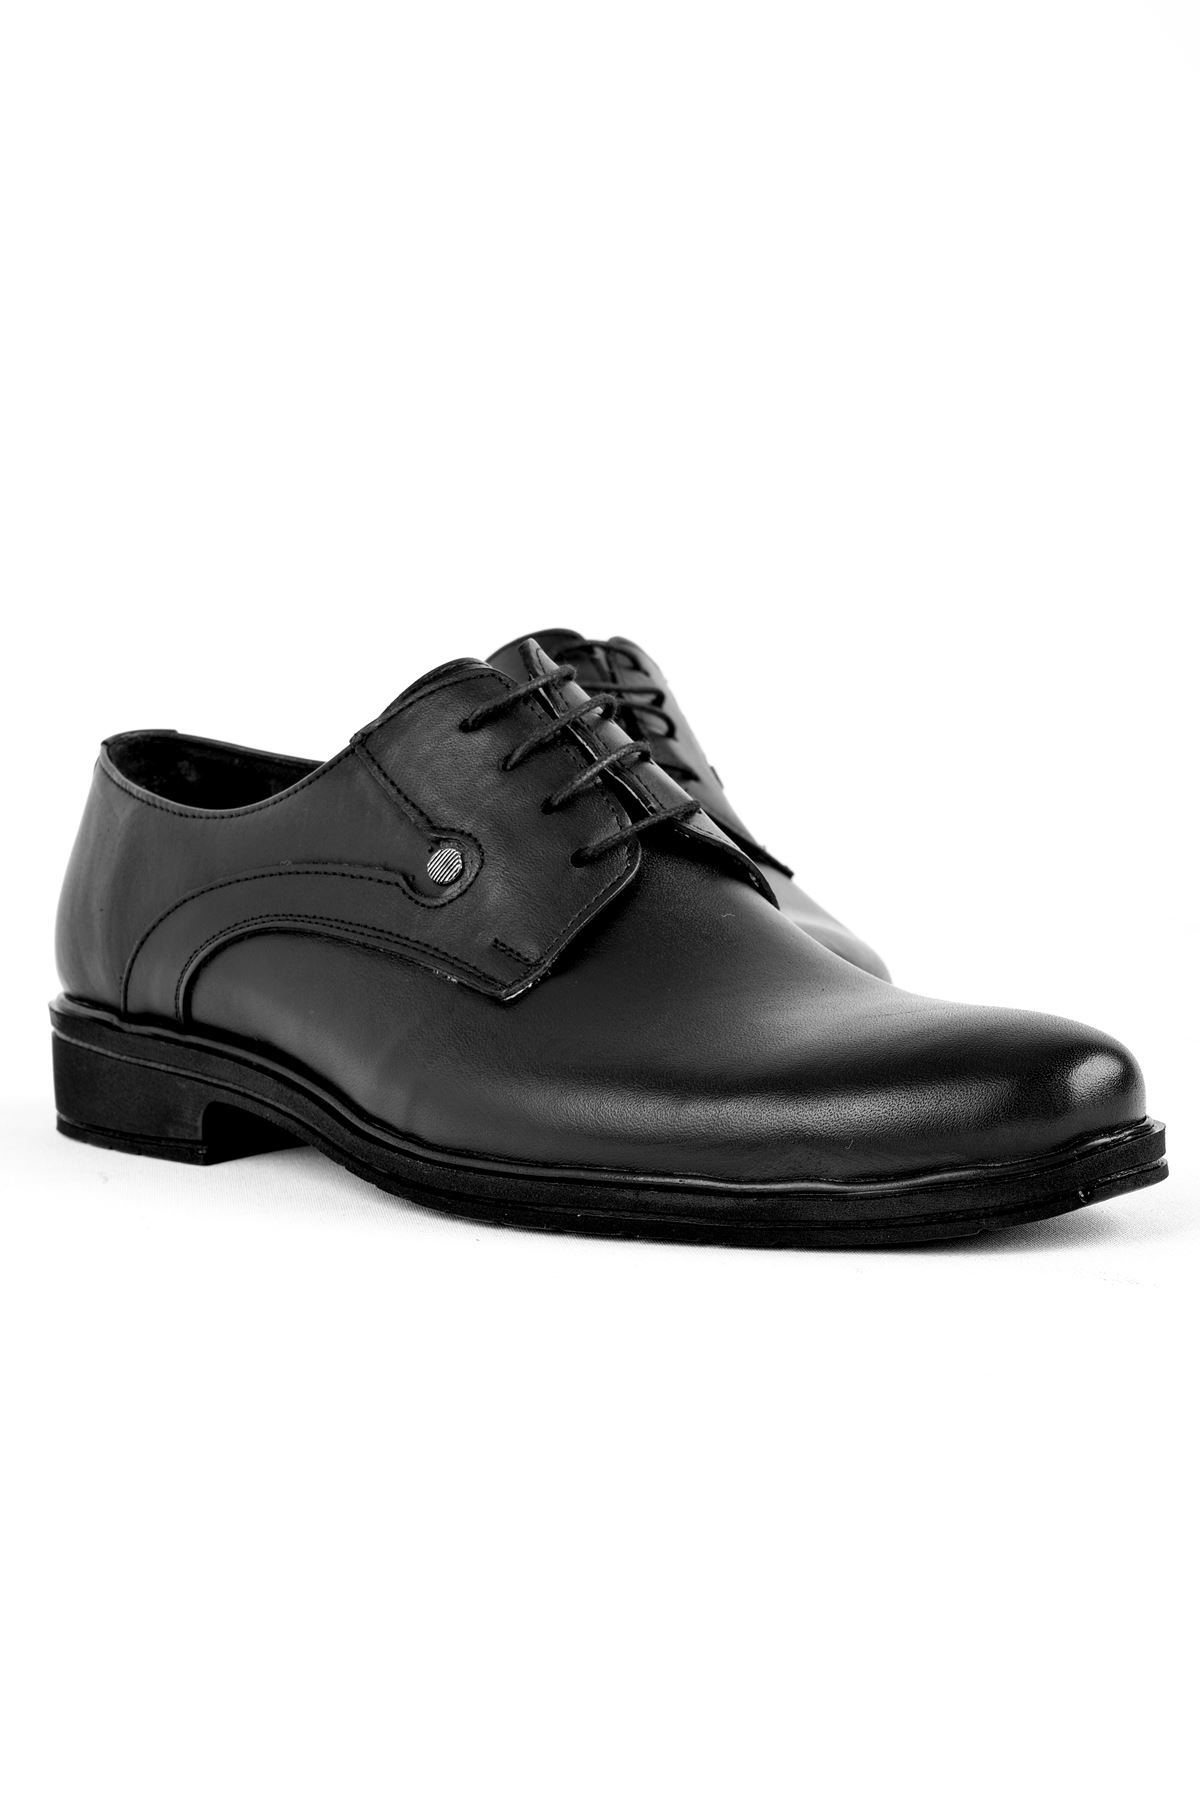 Keira Erkek Hakiki Deri Sivri Burun Klasik Ayakkabı-siyah